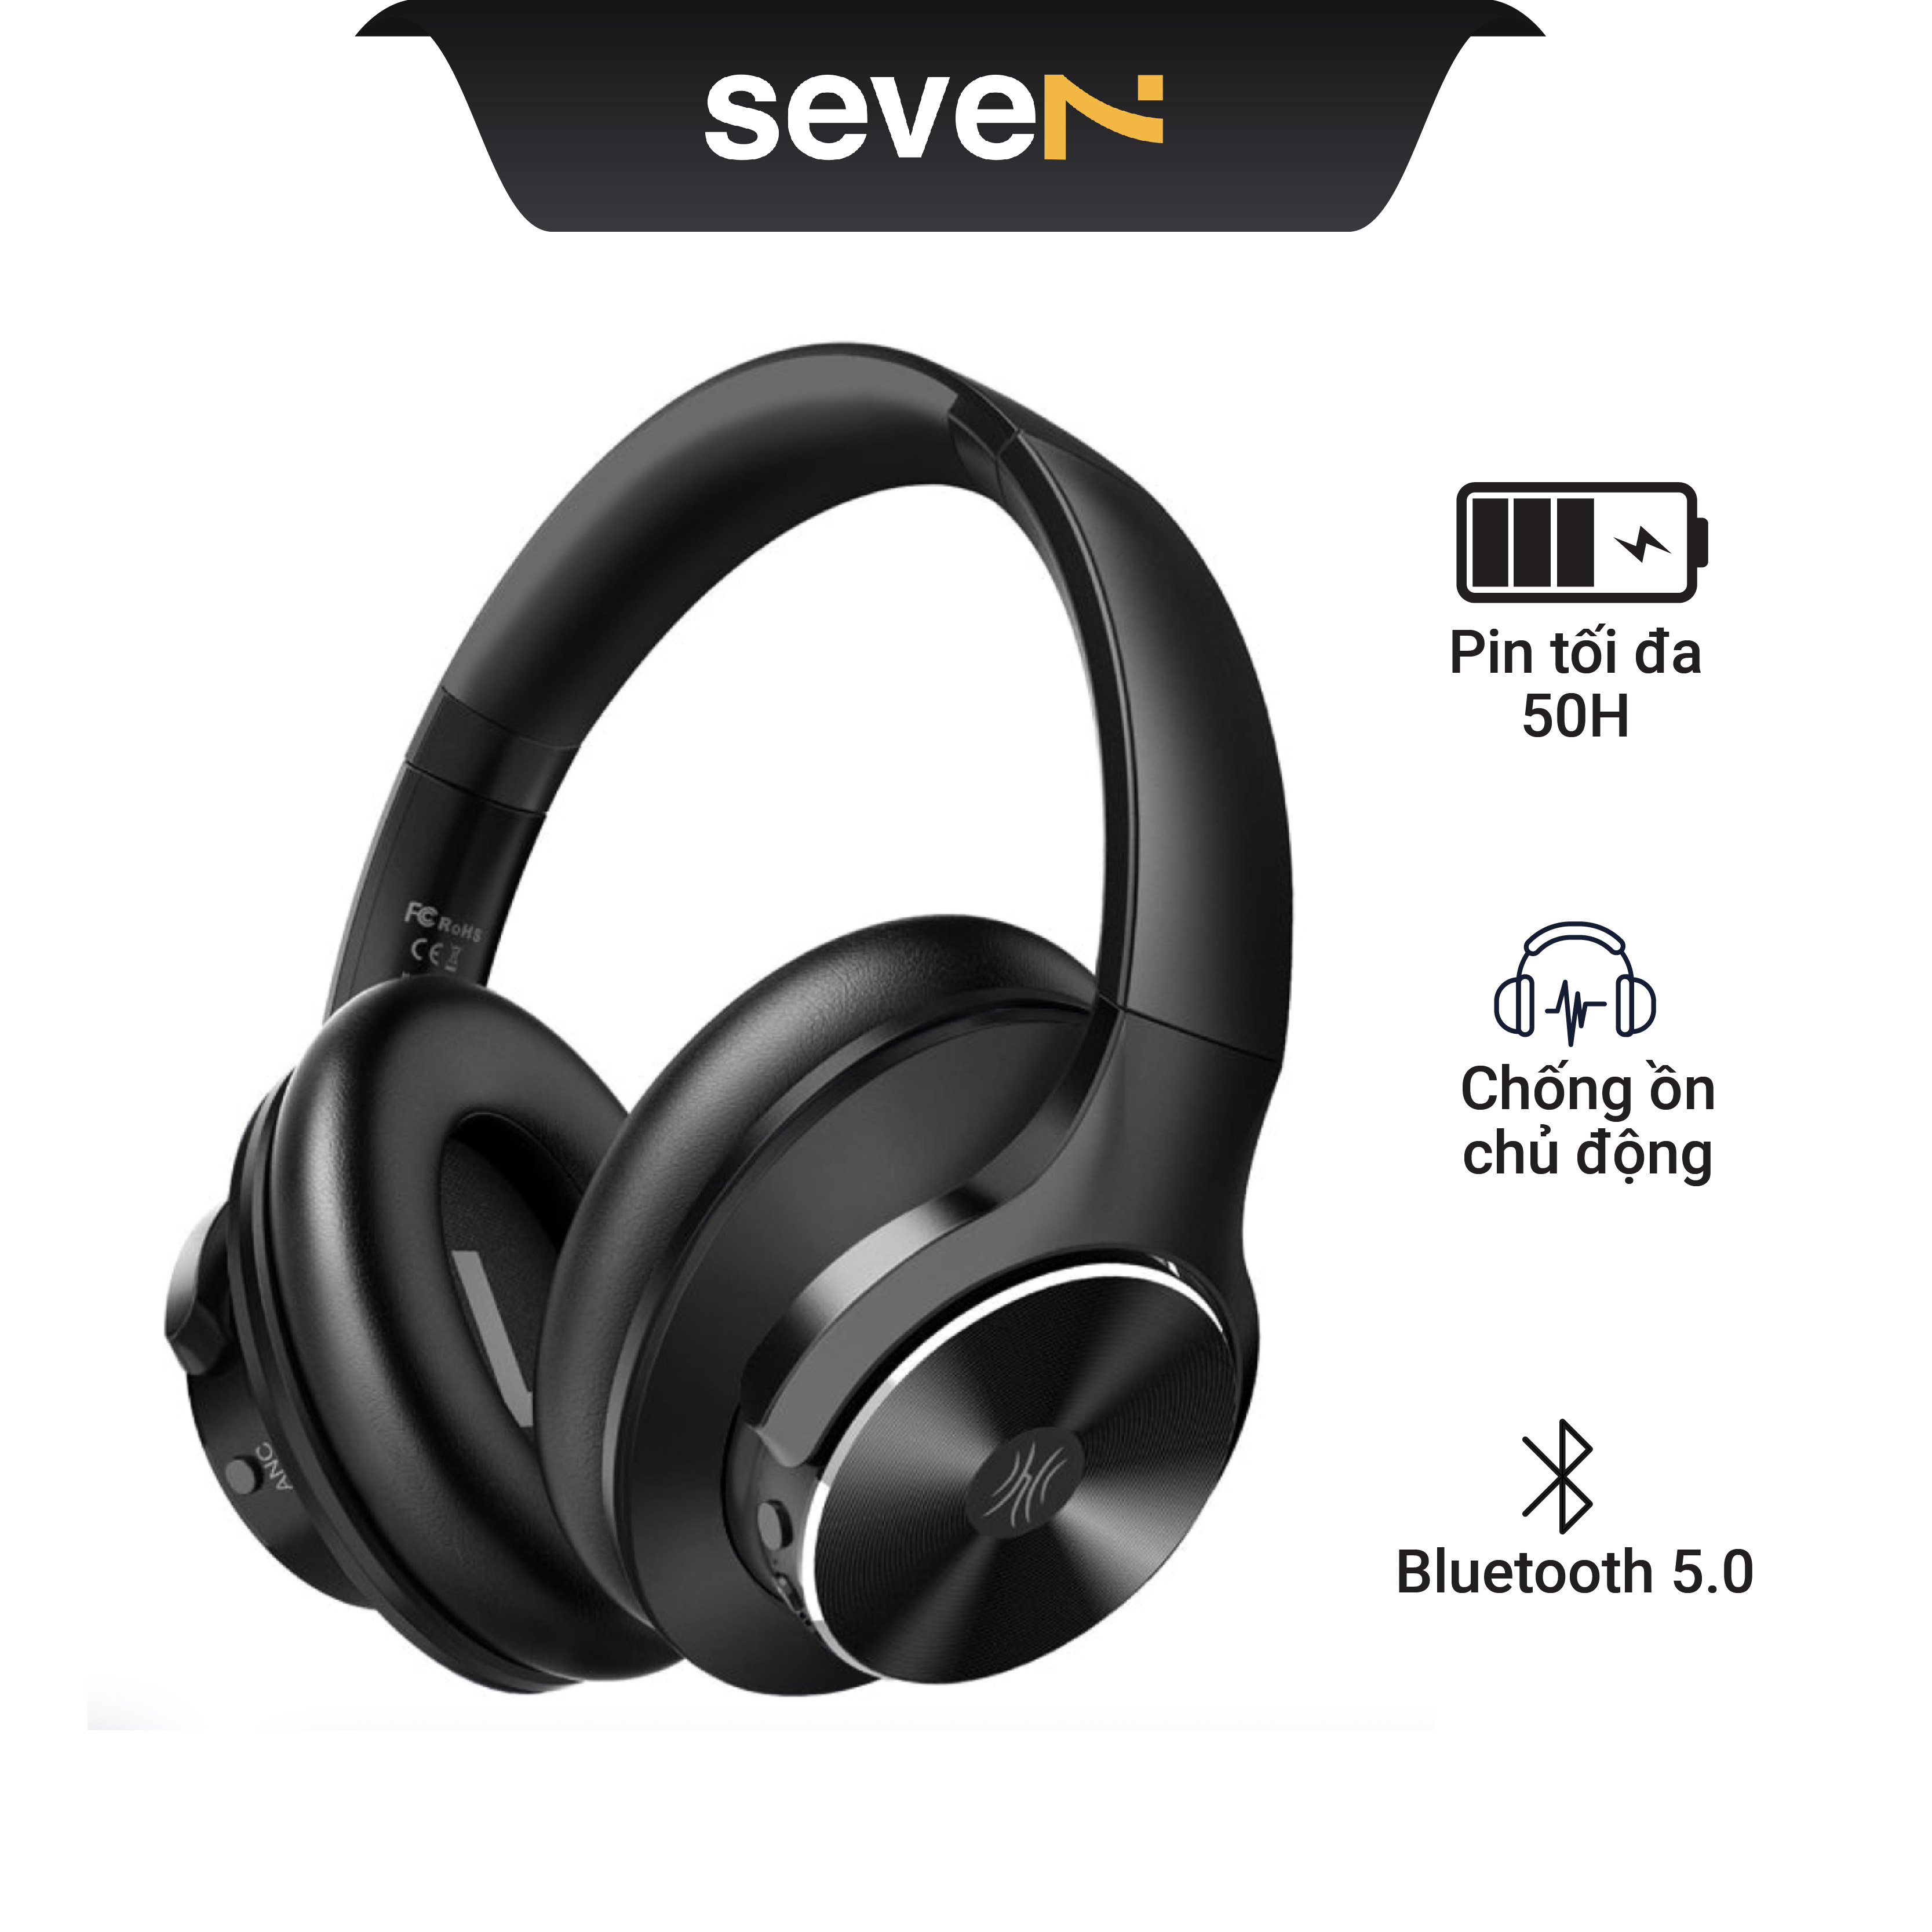 Tai nghe Headphone Bluetooth OneOdio A10 – Driver 40mm, Bluetooth 5.0, Chống ồn chủ động , Thời lượng pin lên tới 50H- Hàng Chính Hãng